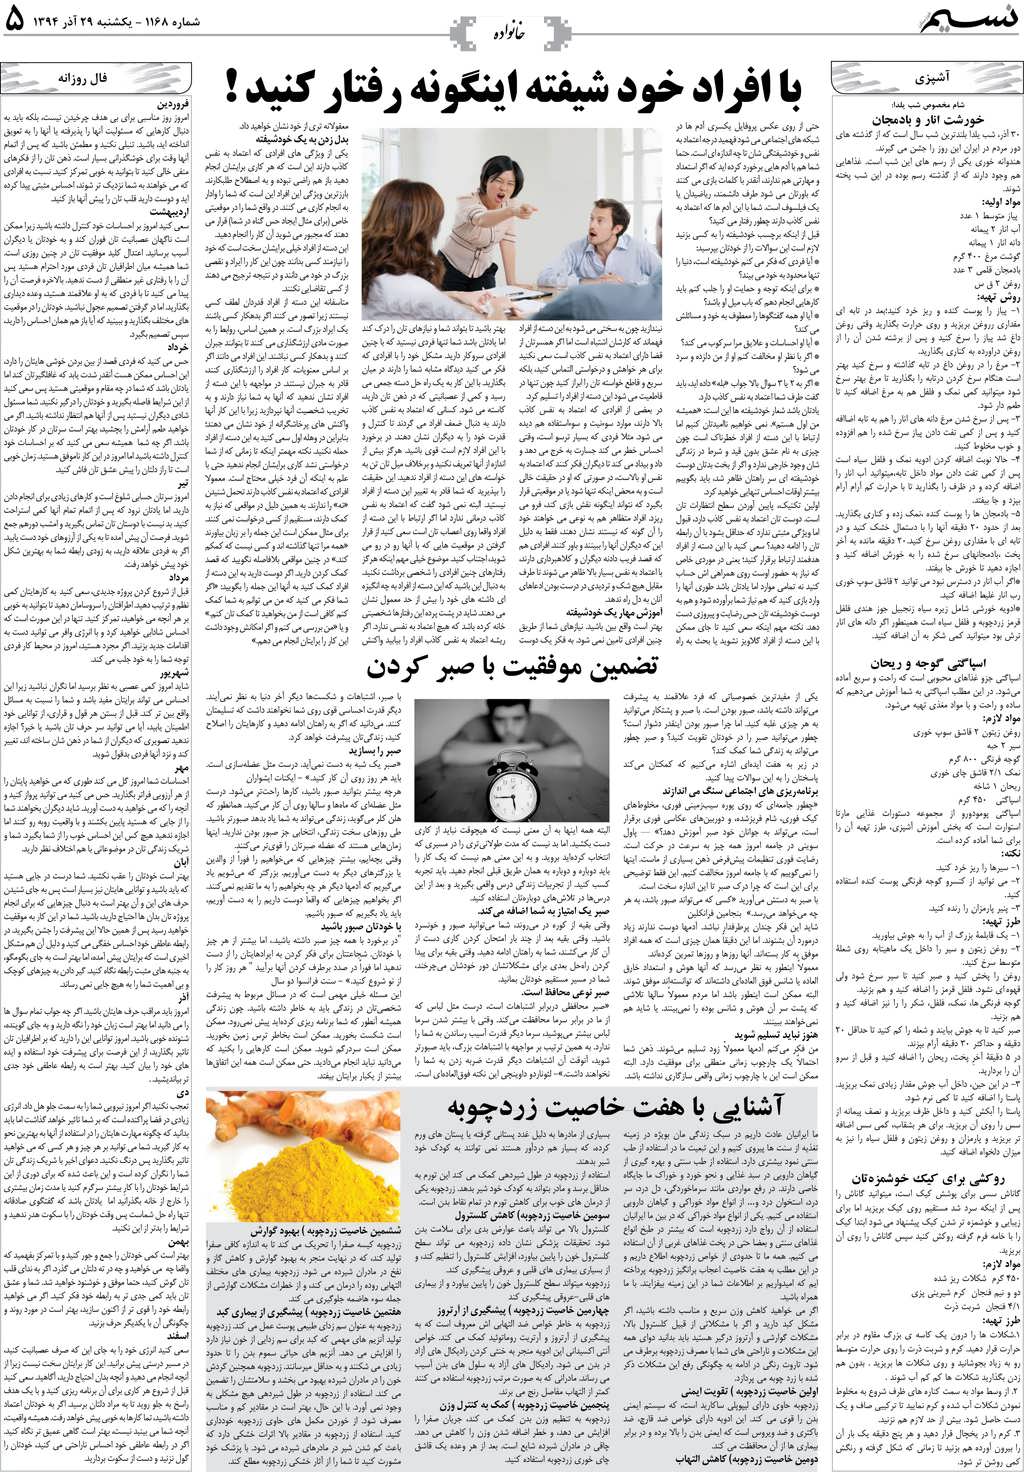 صفحه خانواده روزنامه نسیم شماره 1168